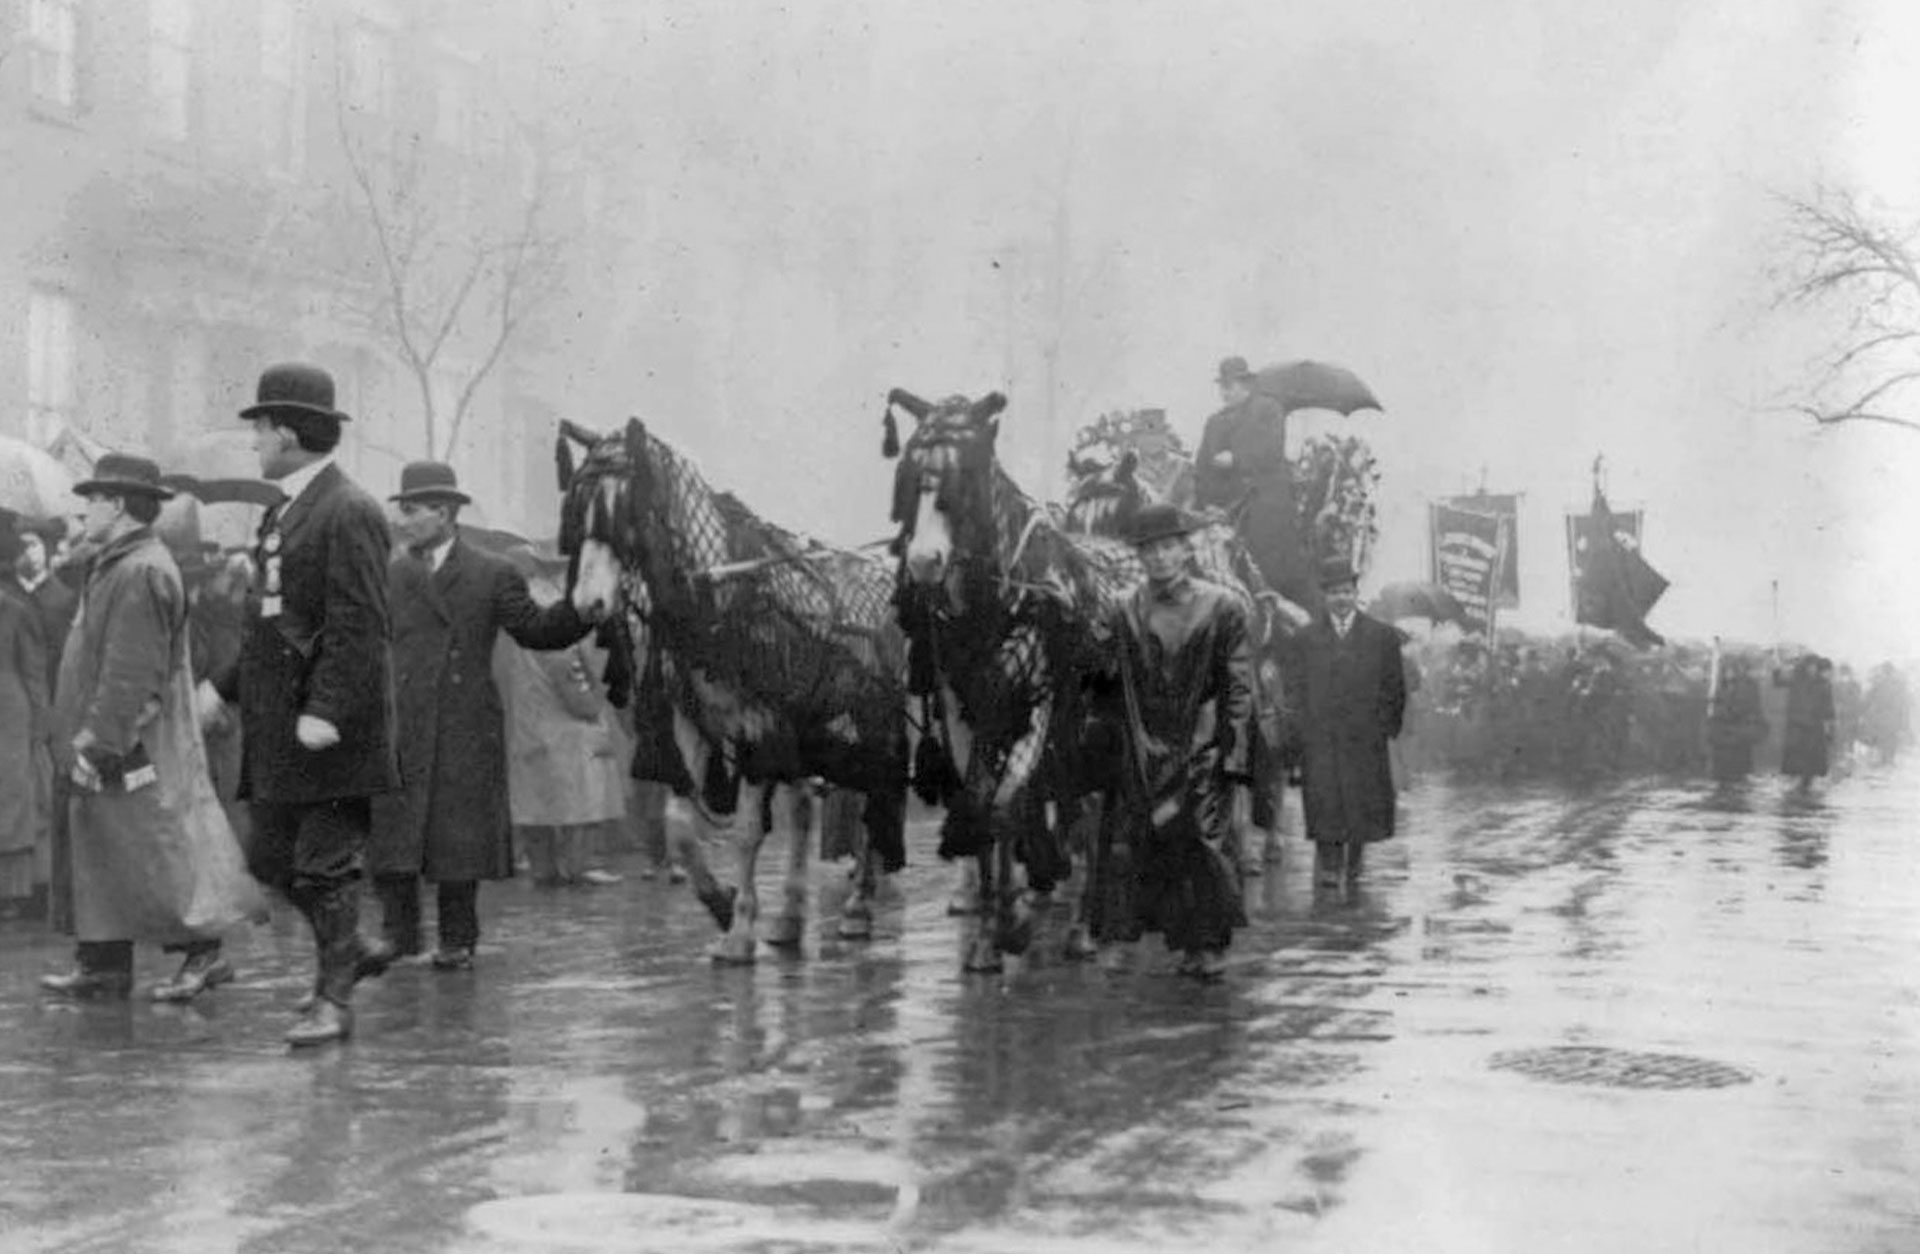 En gammal bild från 1911 där människor och hästar draperade i svart går i procession på en våt gata.eställande en